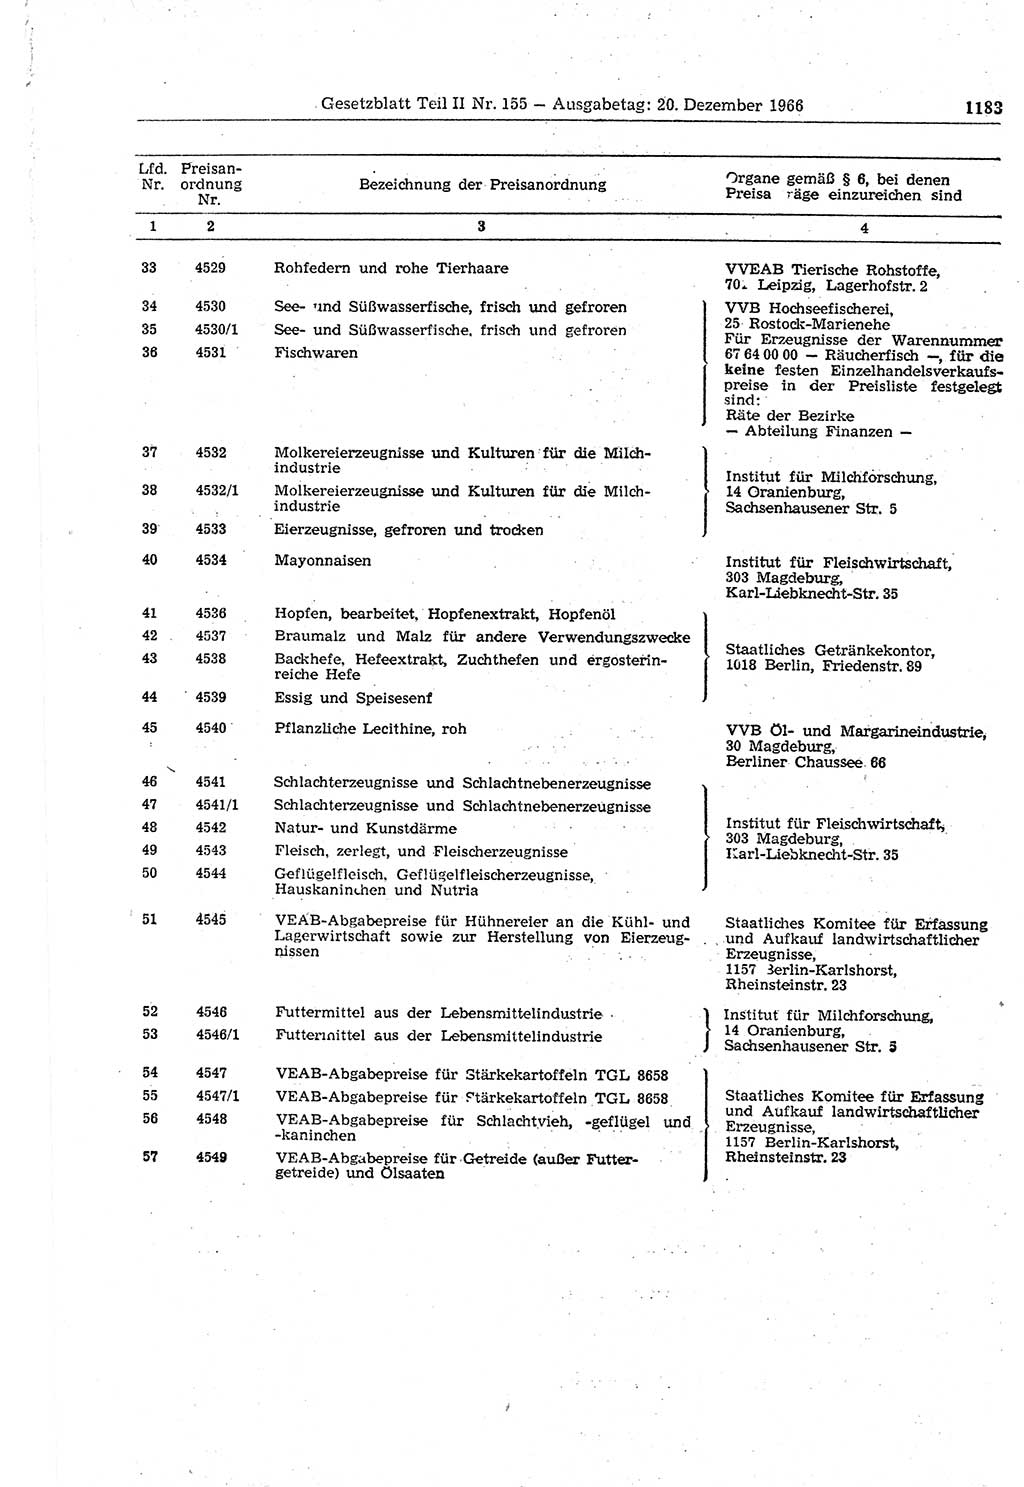 Gesetzblatt (GBl.) der Deutschen Demokratischen Republik (DDR) Teil ⅠⅠ 1966, Seite 1183 (GBl. DDR ⅠⅠ 1966, S. 1183)